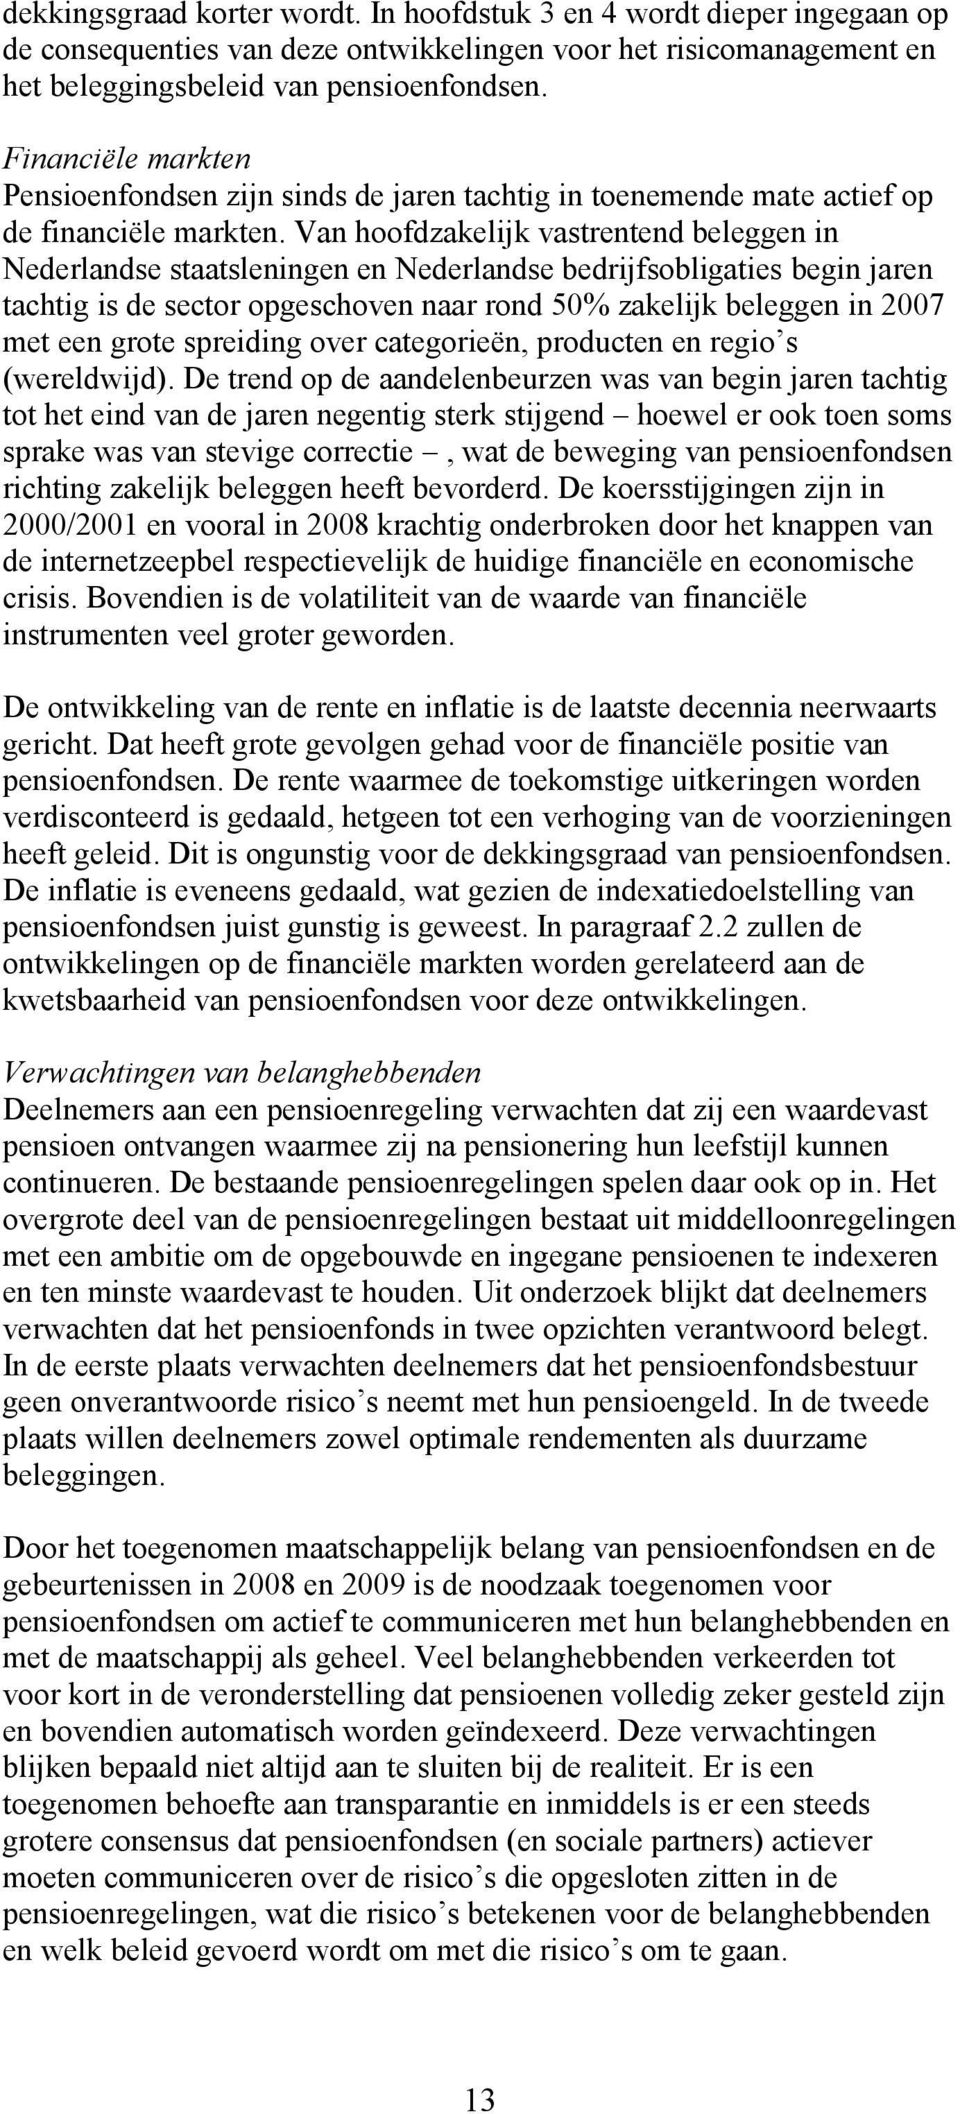 Van hoofdzakelijk vastrentend beleggen in Nederlandse staatsleningen en Nederlandse bedrijfsobligaties begin jaren tachtig is de sector opgeschoven naar rond 50% zakelijk beleggen in 2007 met een